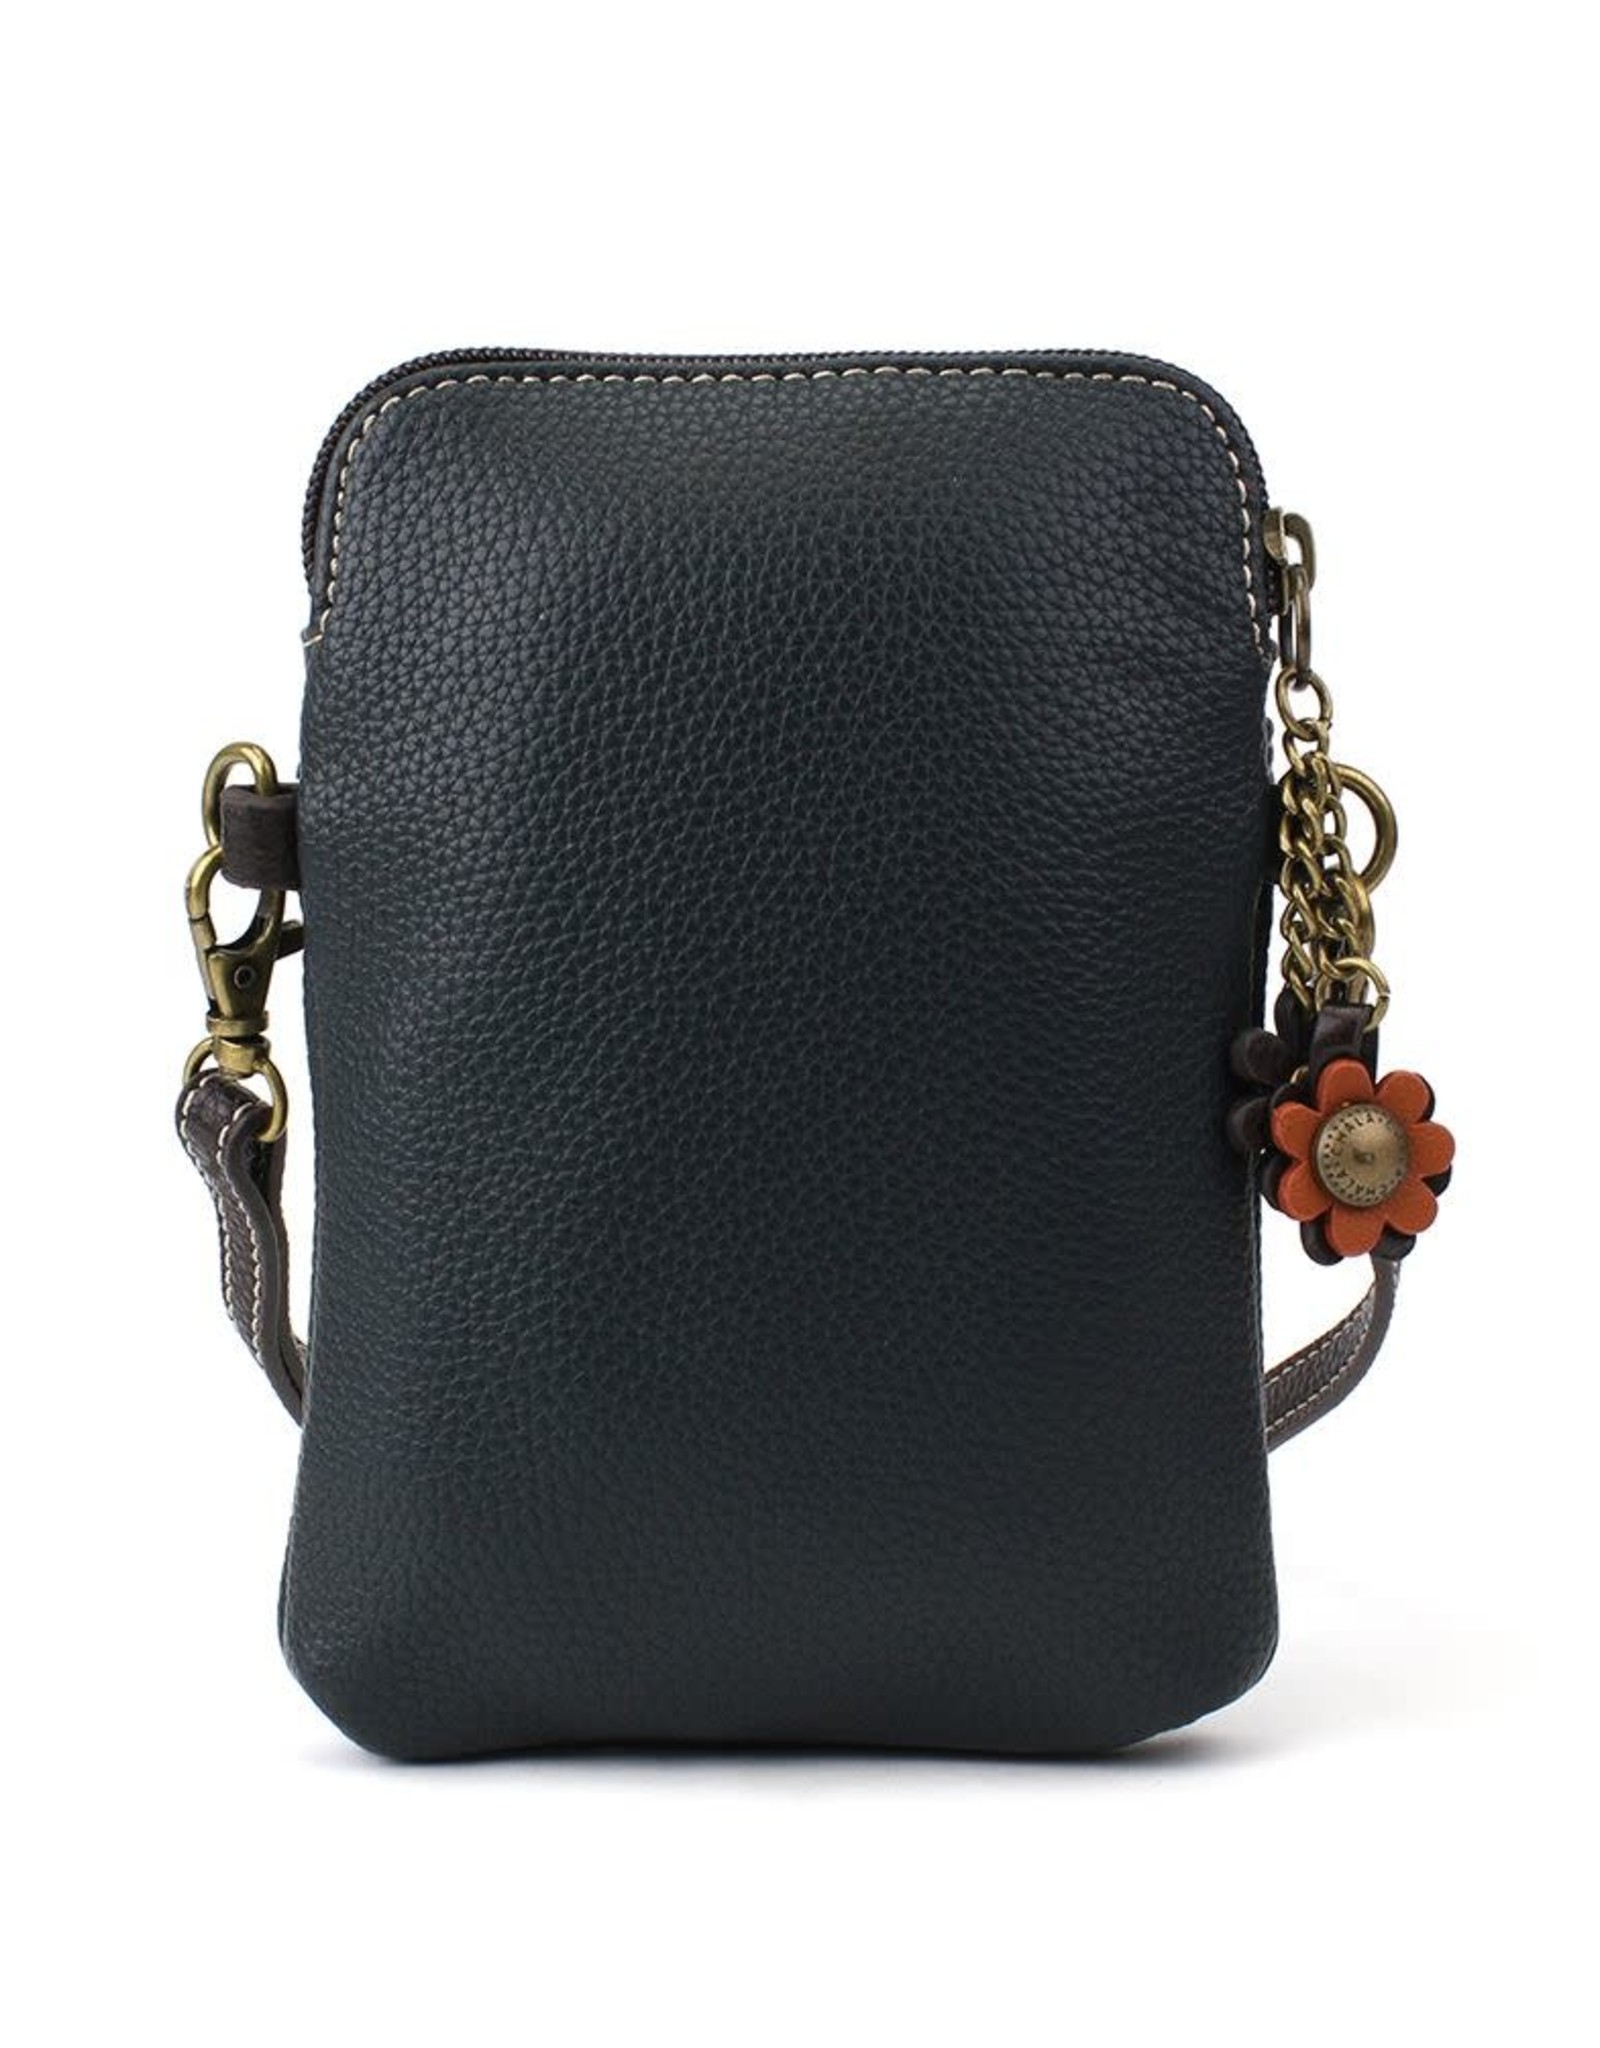 Chala Handbags Navy Sunflower Cellphone Convertible Crossbody Bag